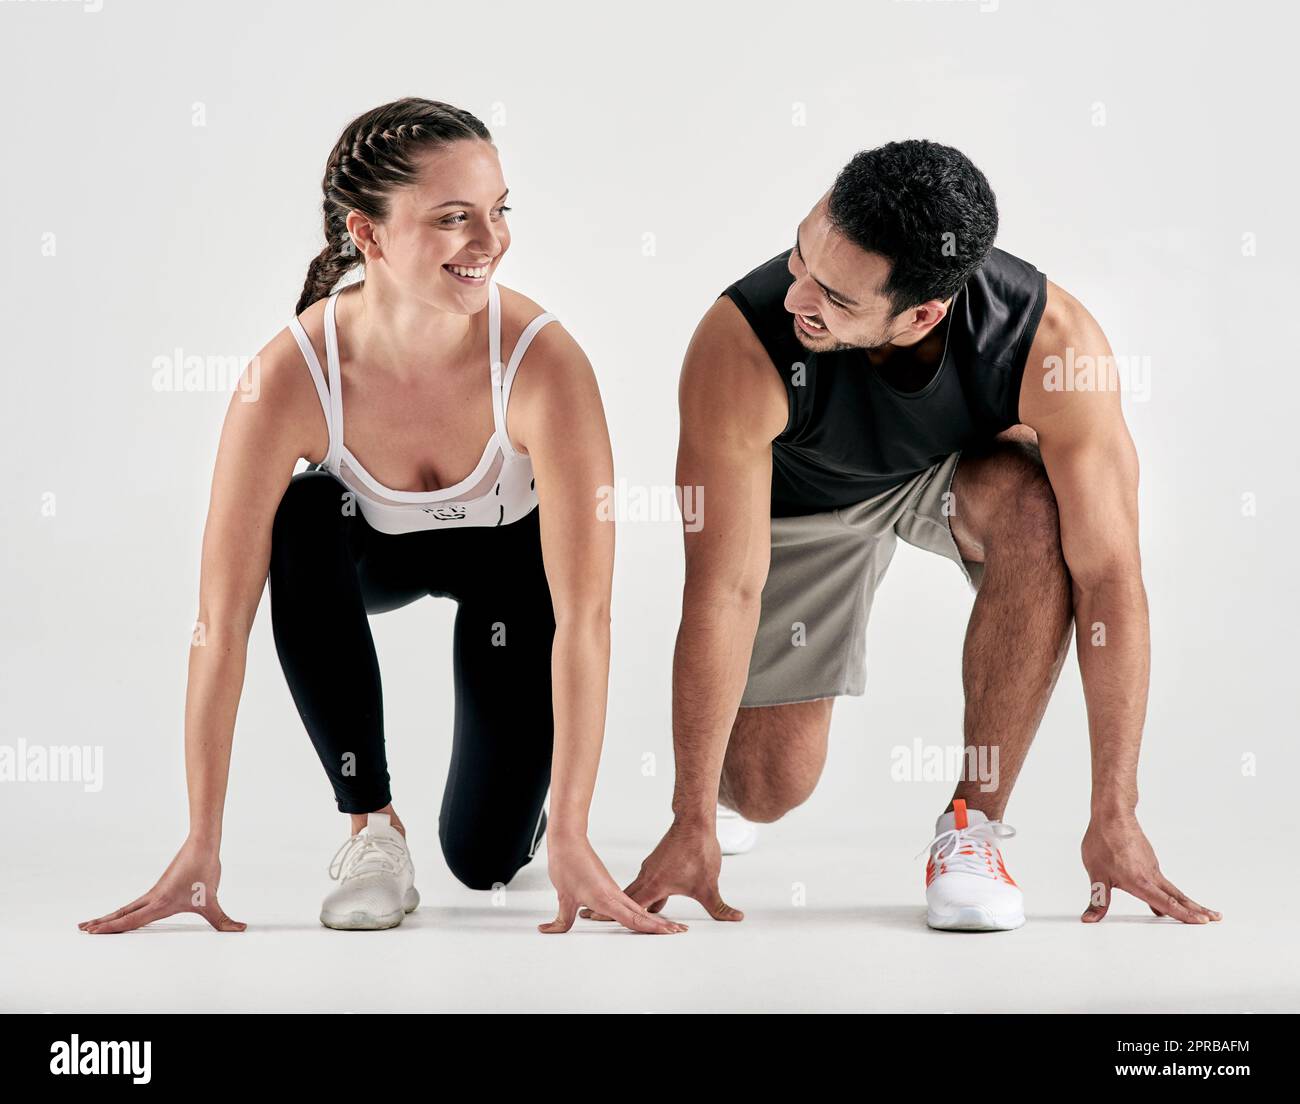 Dein Rennen, dein Tempo. Studioaufnahme eines sportlichen jungen Mannes und einer jungen Frau in Startposition vor weißem Hintergrund. Stockfoto